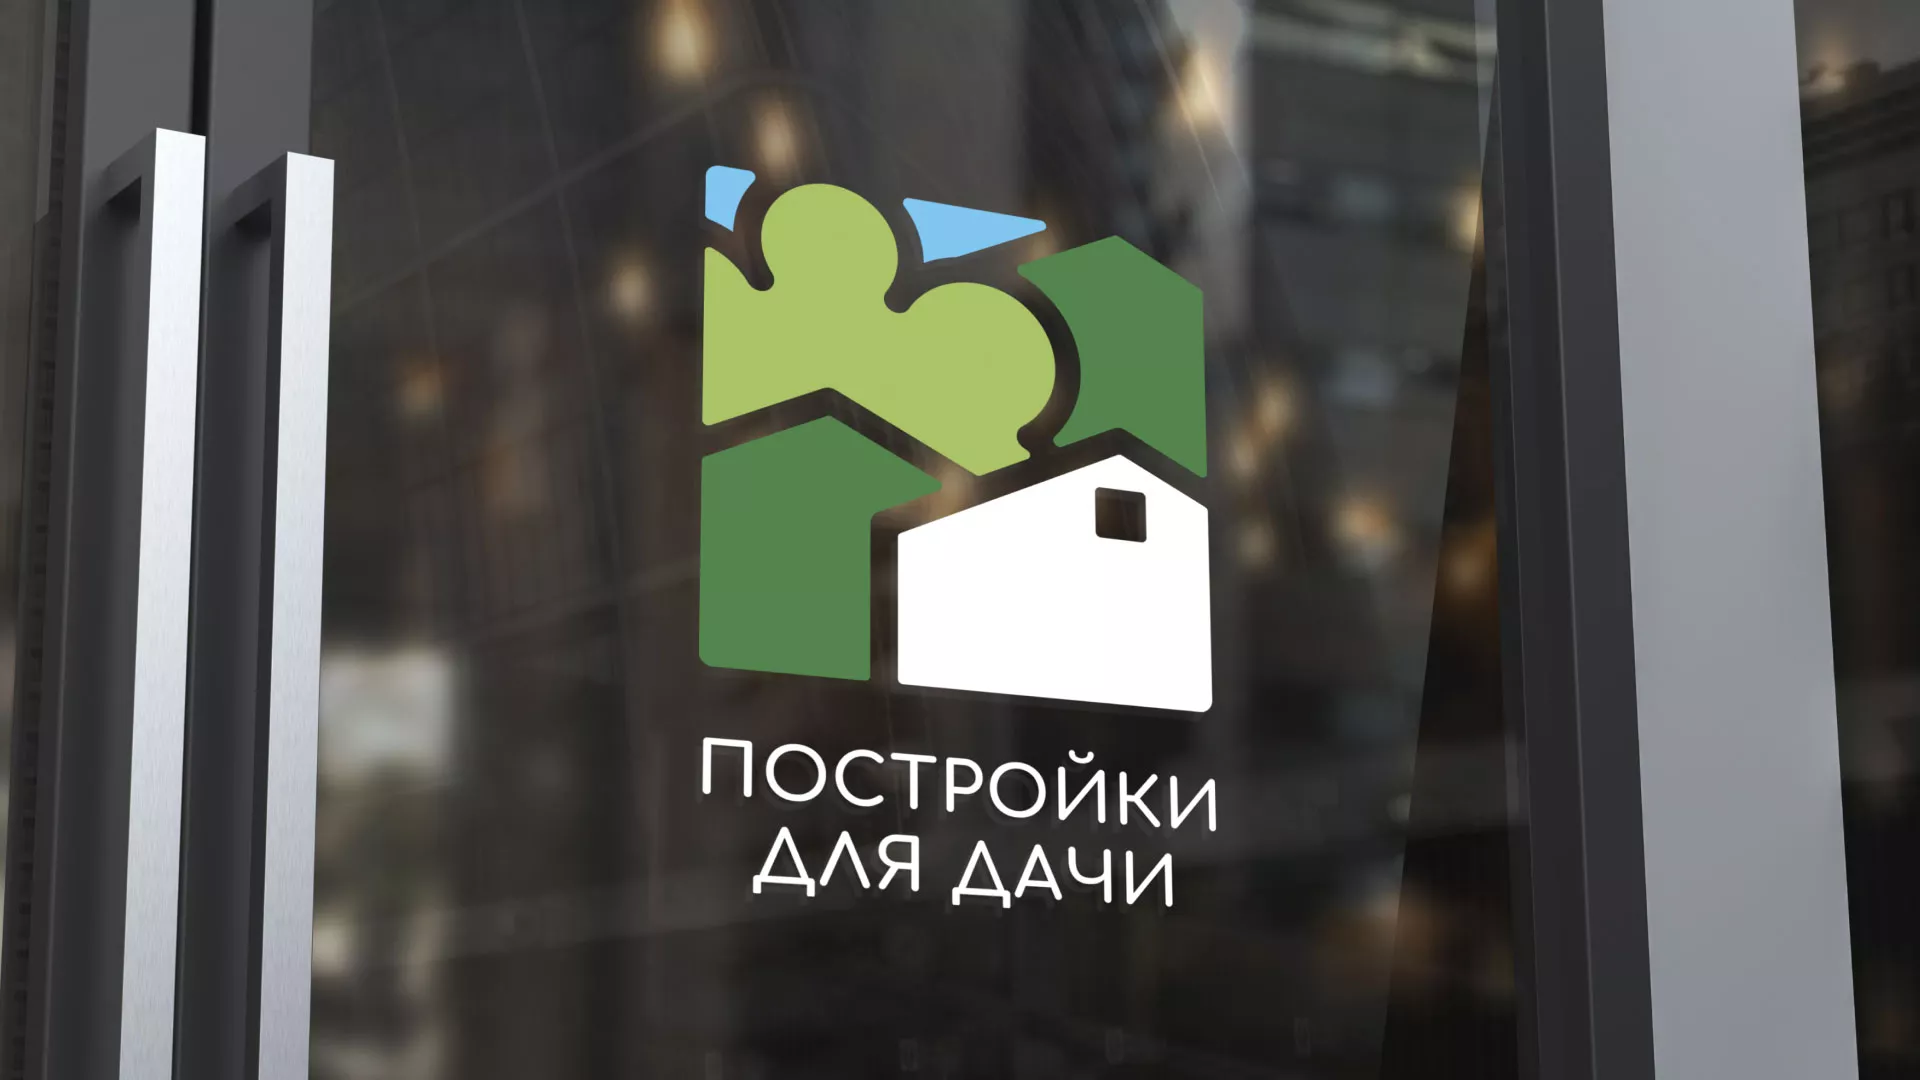 Разработка логотипа в Дагестанских Огнях для компании «Постройки для дачи»